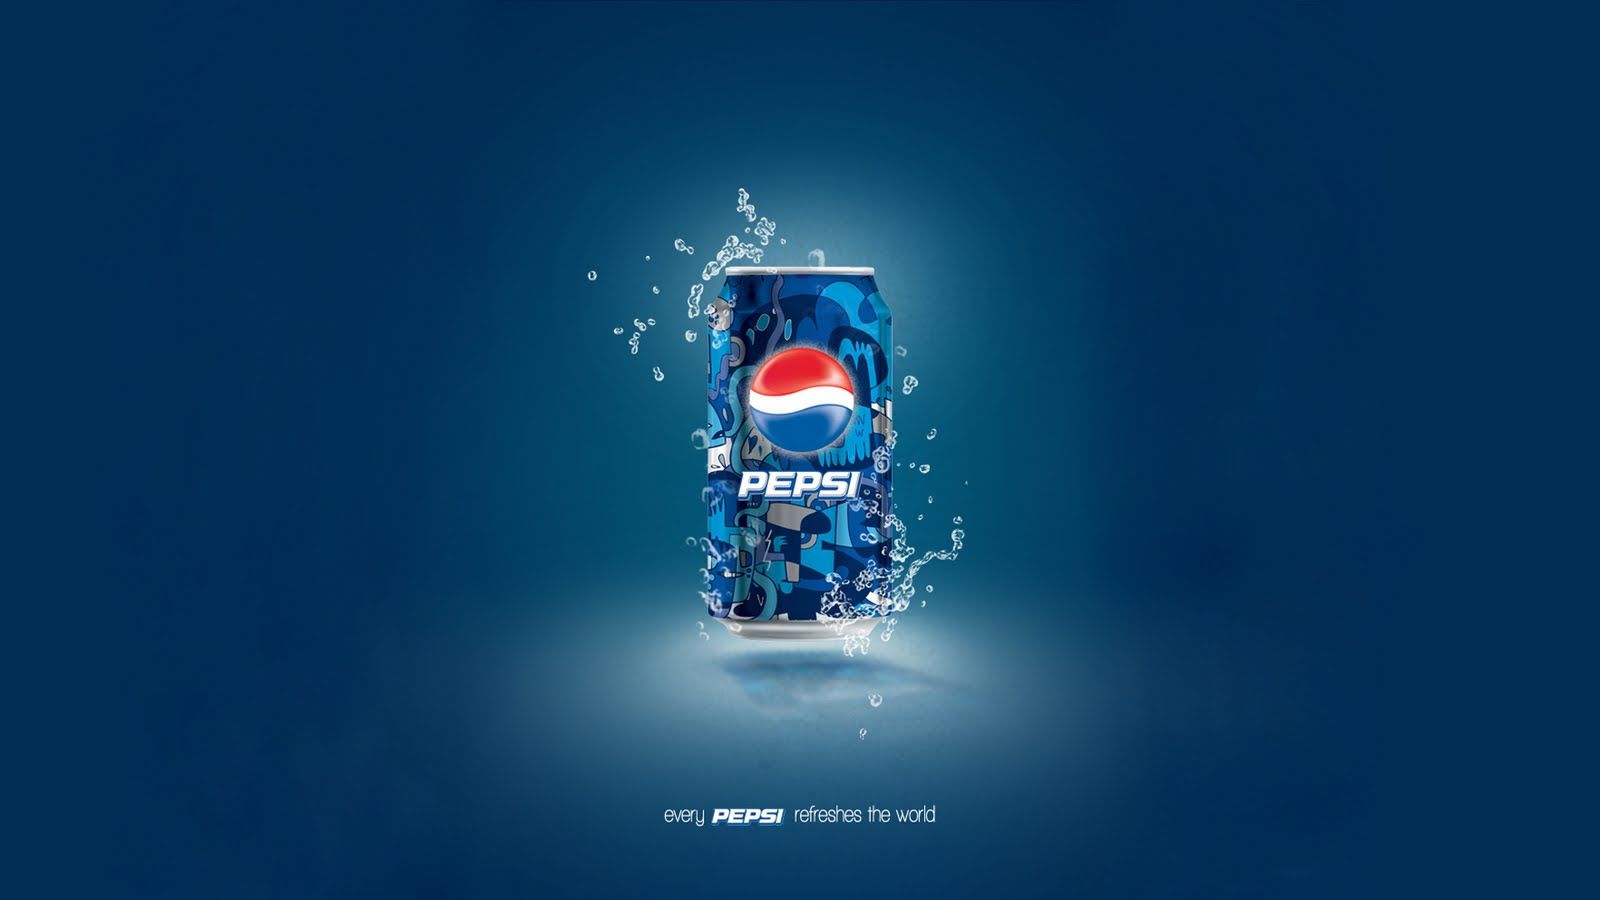 HD wallpaper, Pepsi